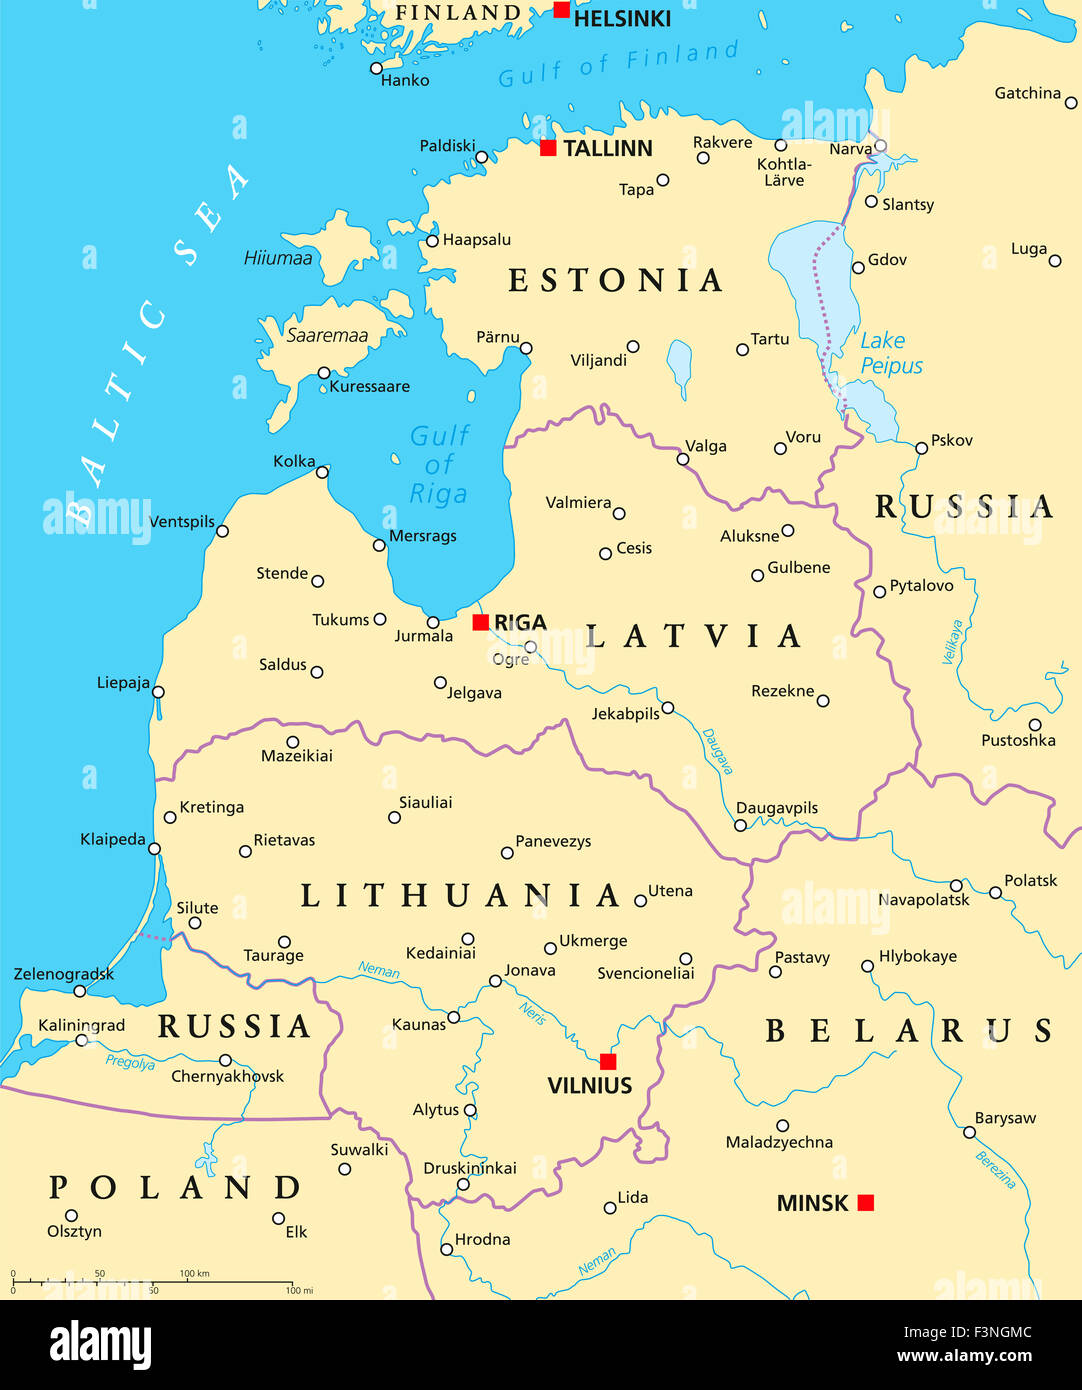 Politische Karte der baltischen Staaten. Baltikum-Bereich mit Kapitellen, Landesgrenzen, wichtige Städte, Flüsse und Seen. Stockfoto